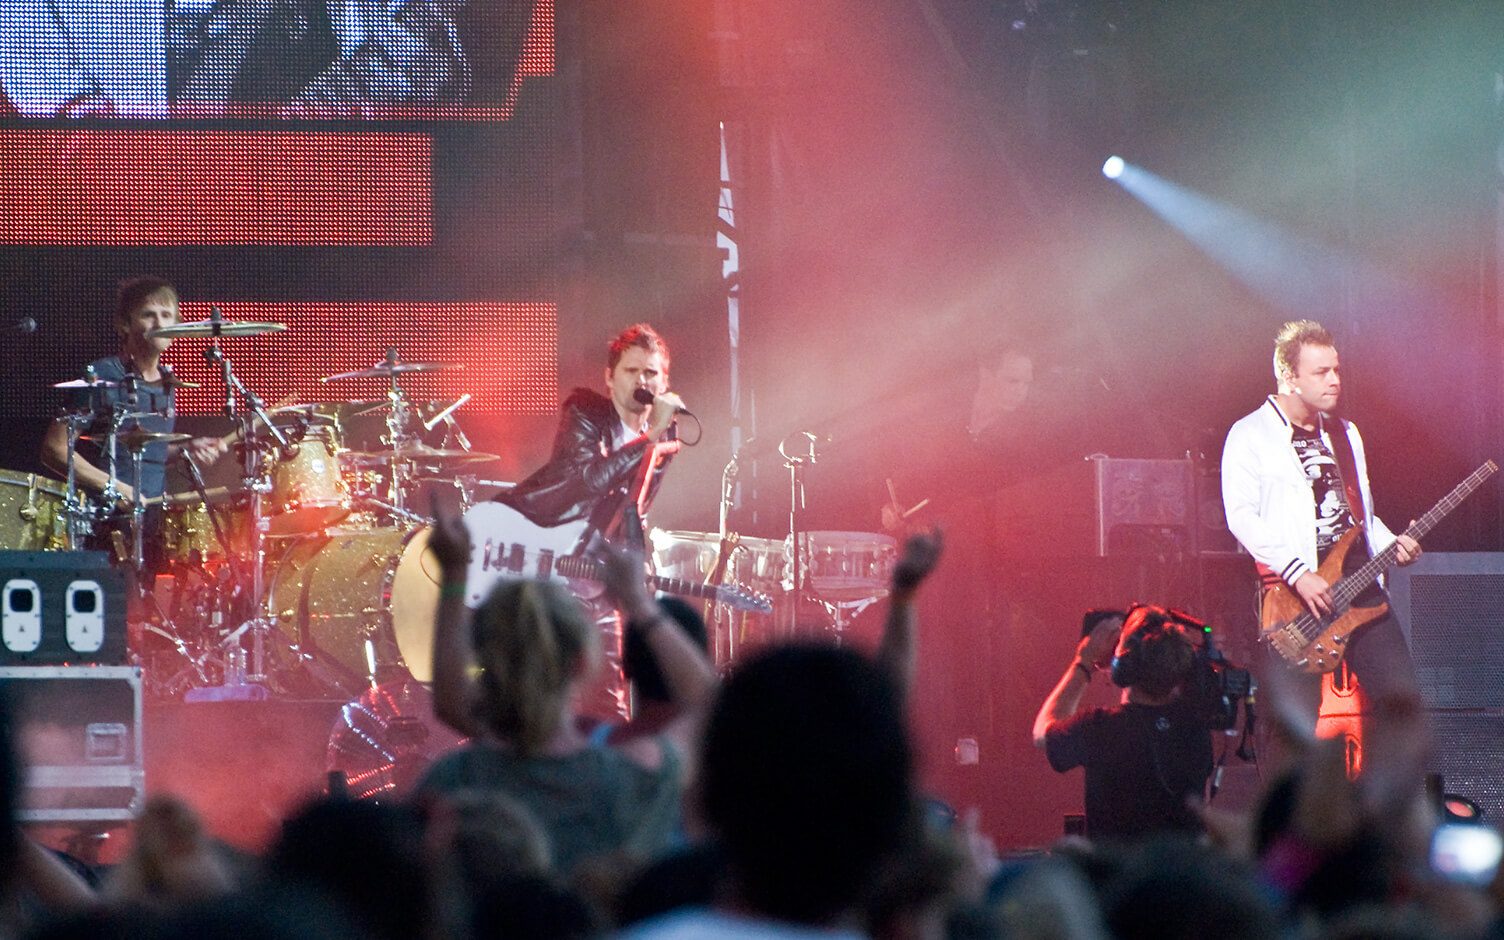 Épico concierto de Muse, con impresionantes efectos visuales y una fusión de rock y elementos electrónicos